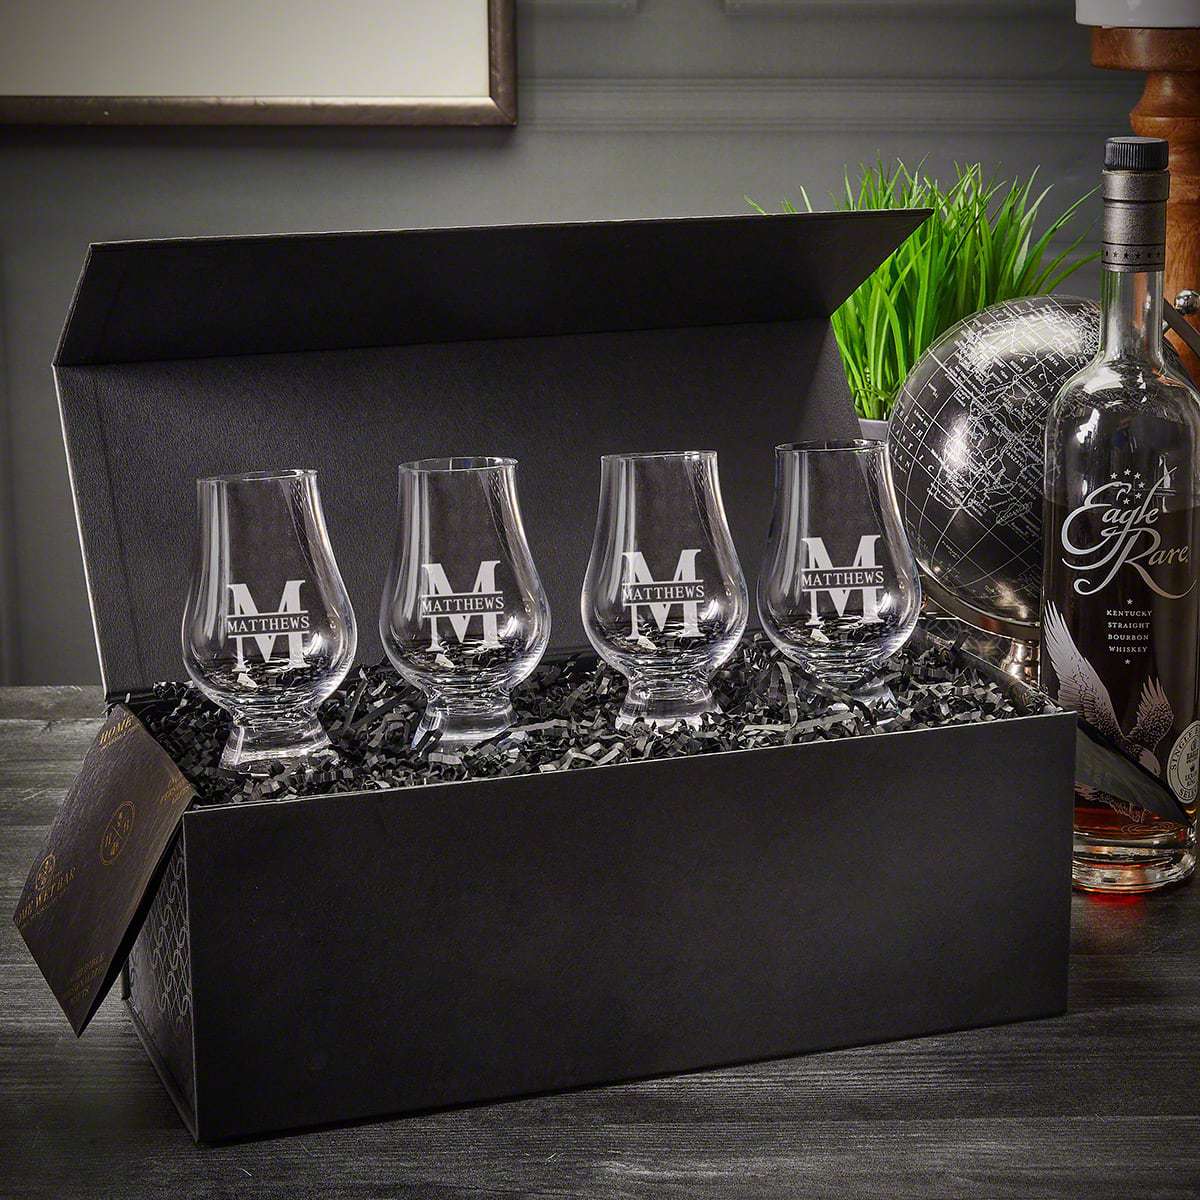 Customized Glencairn Whiskey Glasses and Luxury Box Set - 5pc 